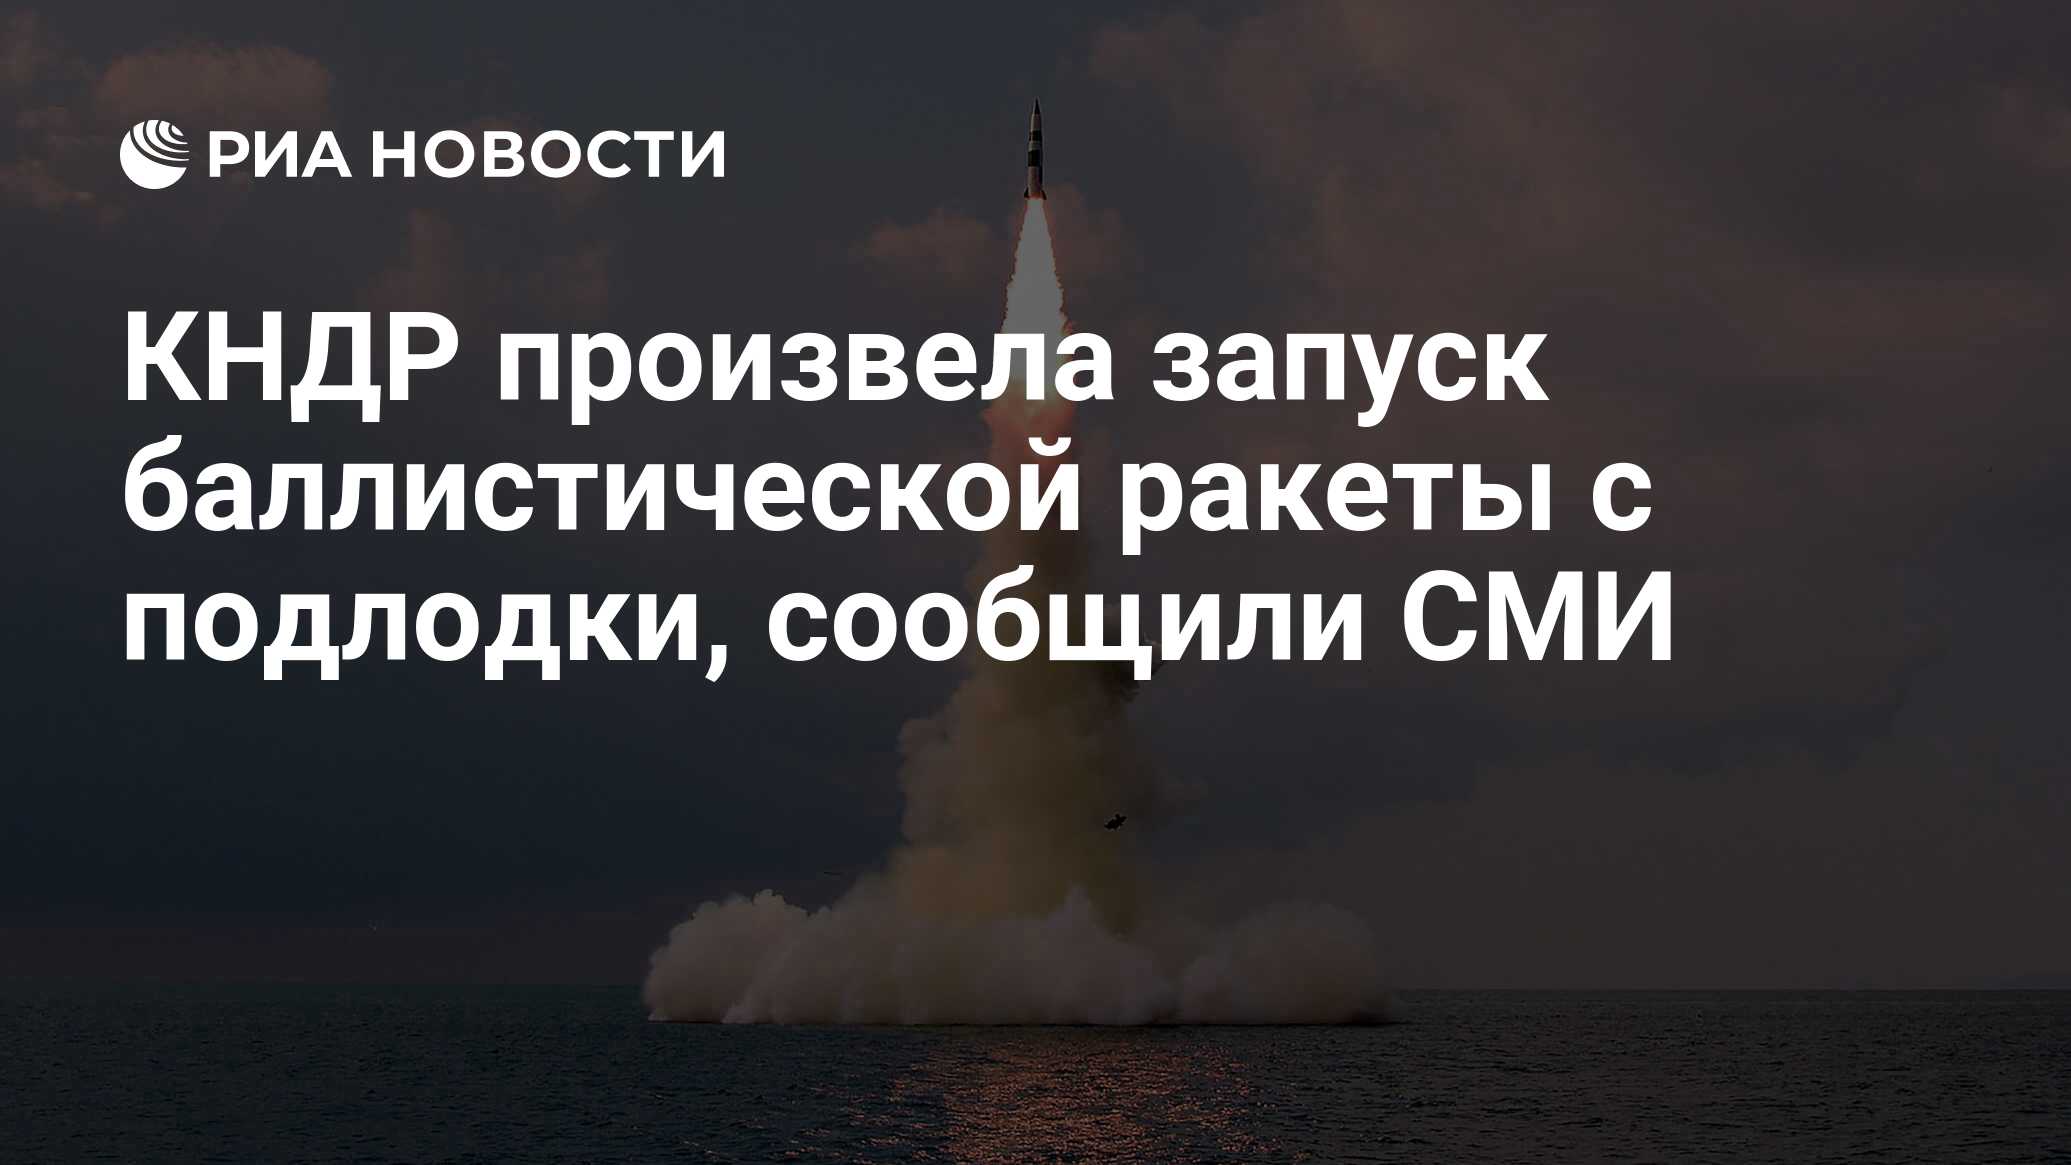 КНДР произвела запуск баллистической ракеты с подлодки, сообщили СМИ